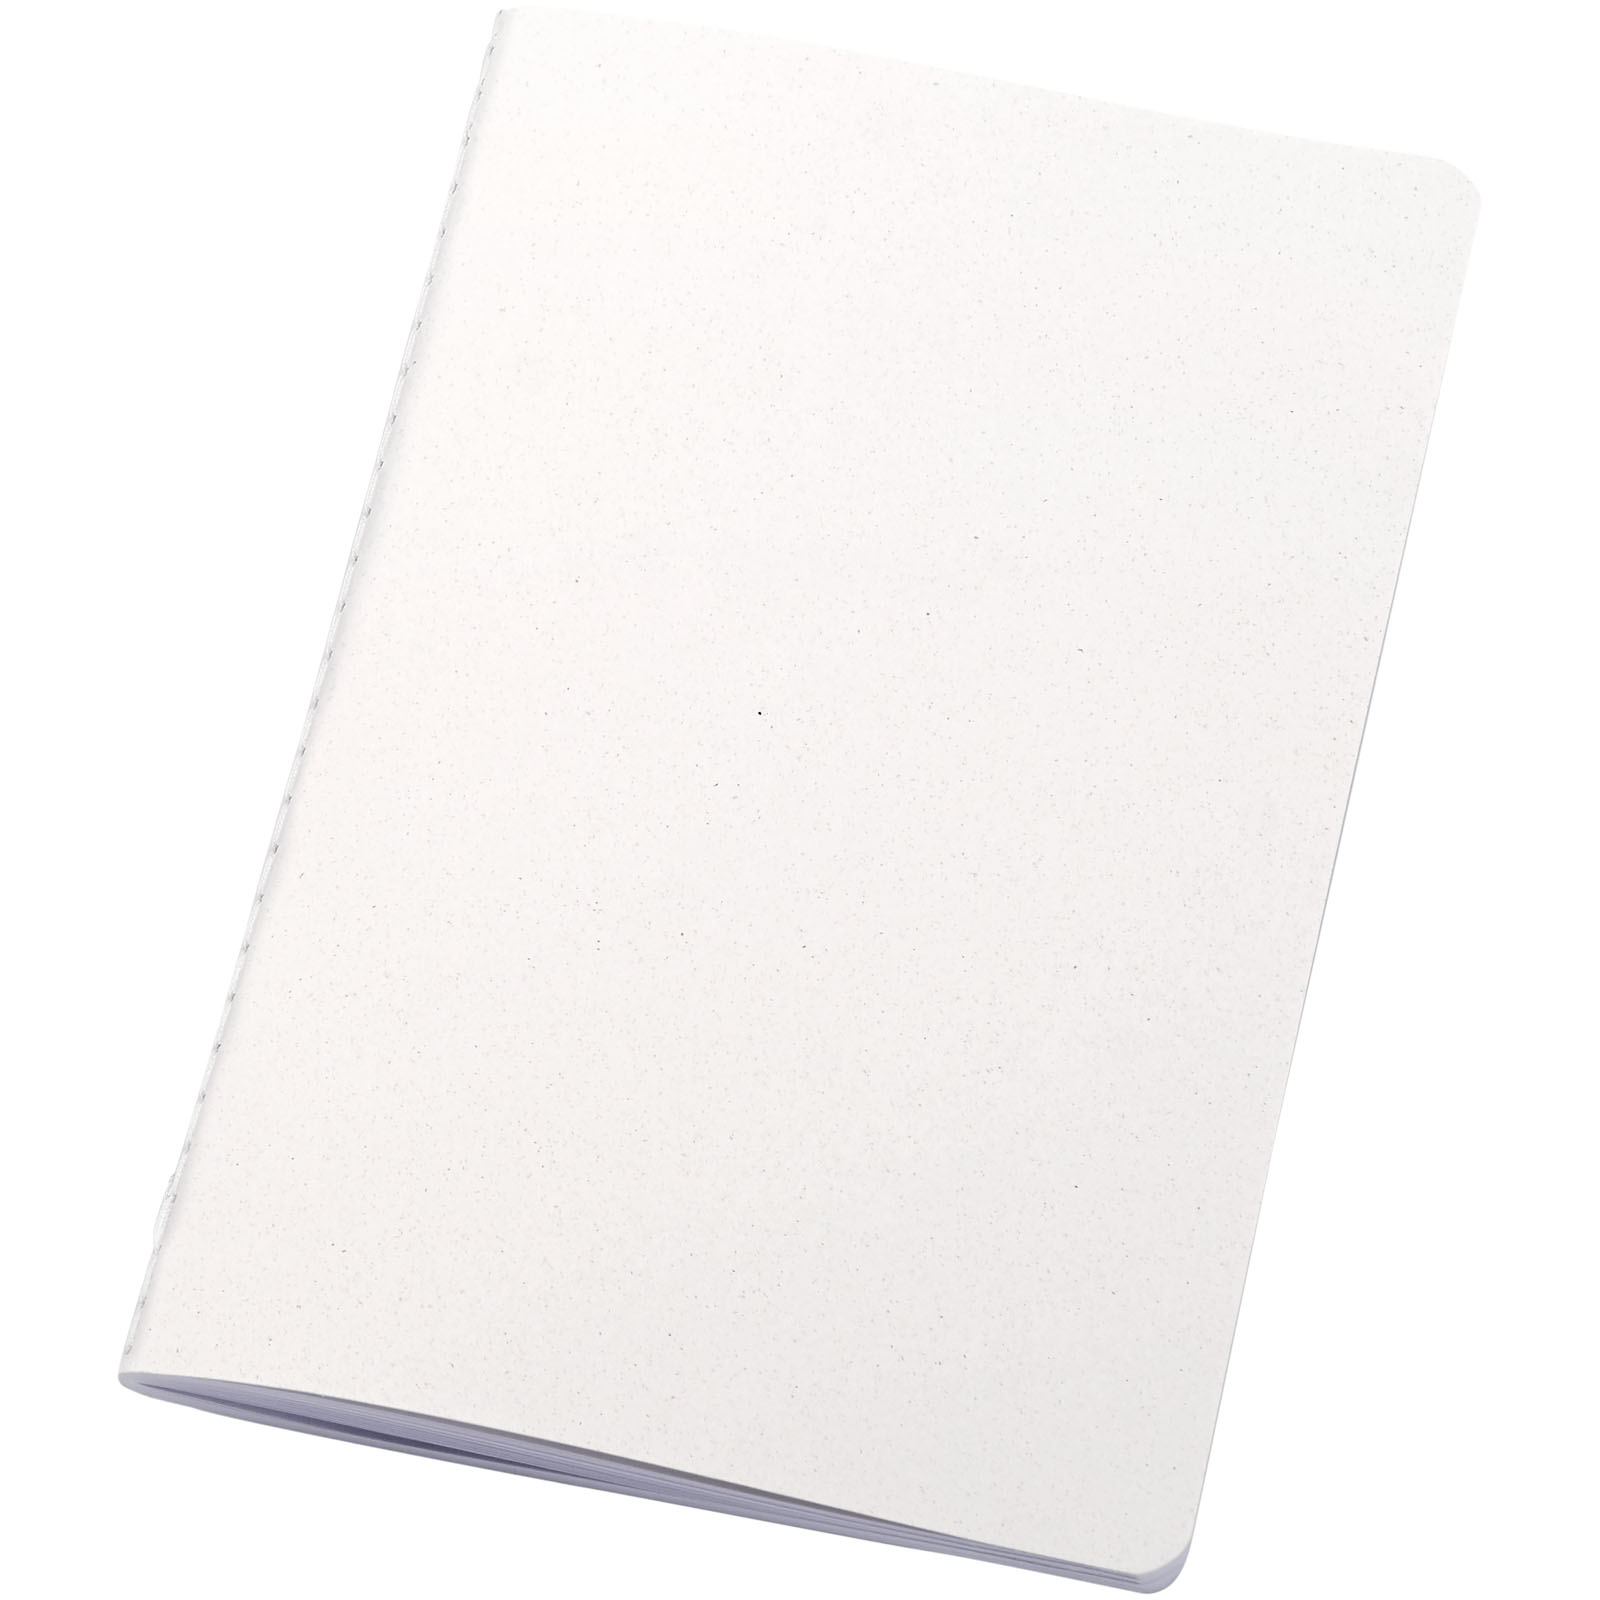 Notebooks - Fabia crush paper cover notebook